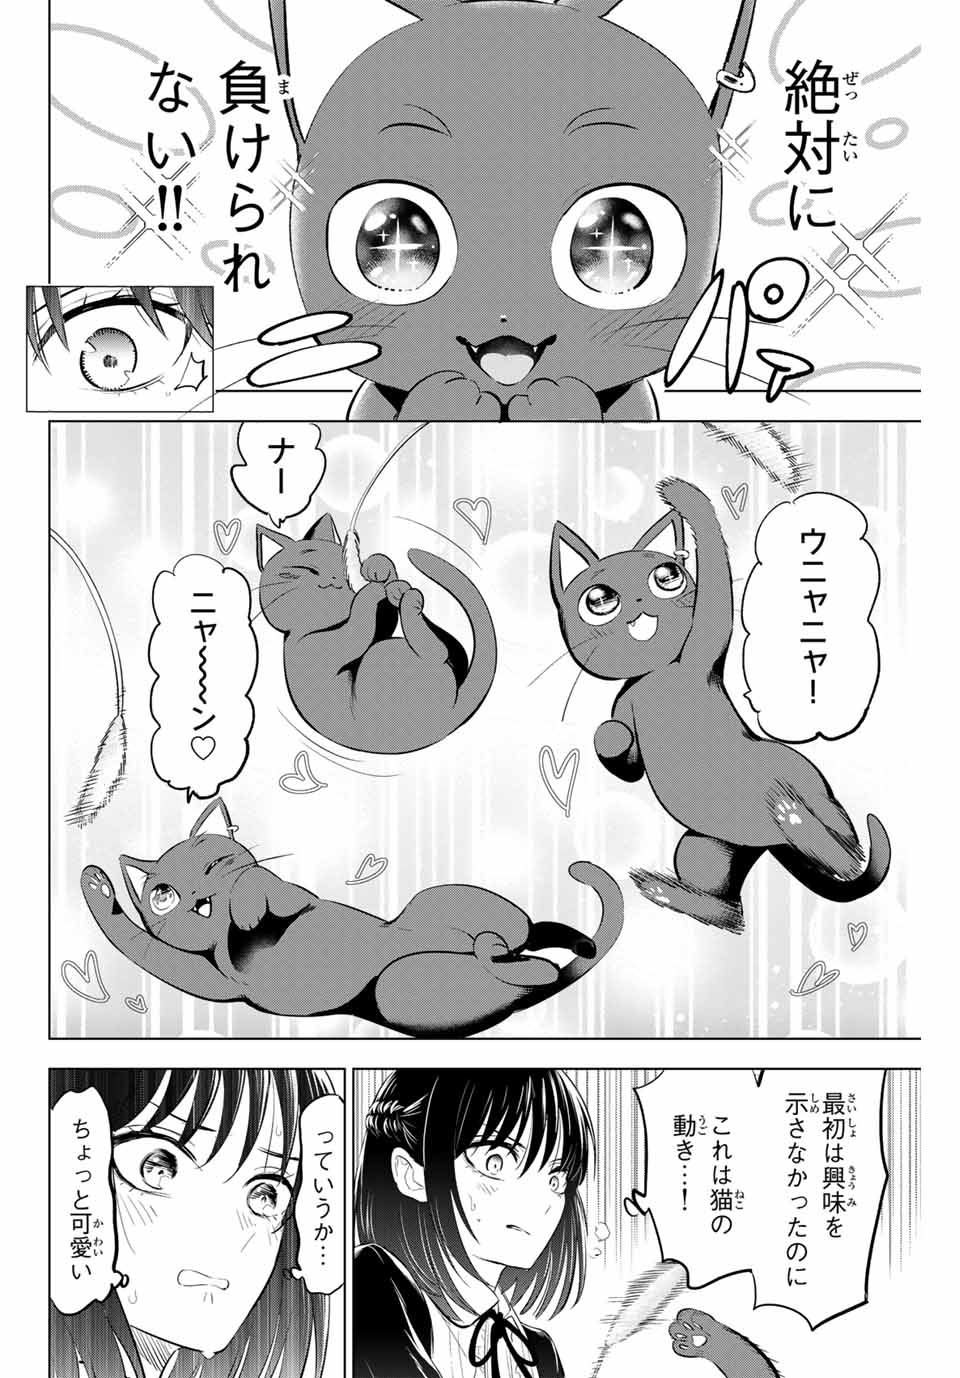 Kuroneko to Majo no Kyoushitsu - Chapter 61 - Page 12